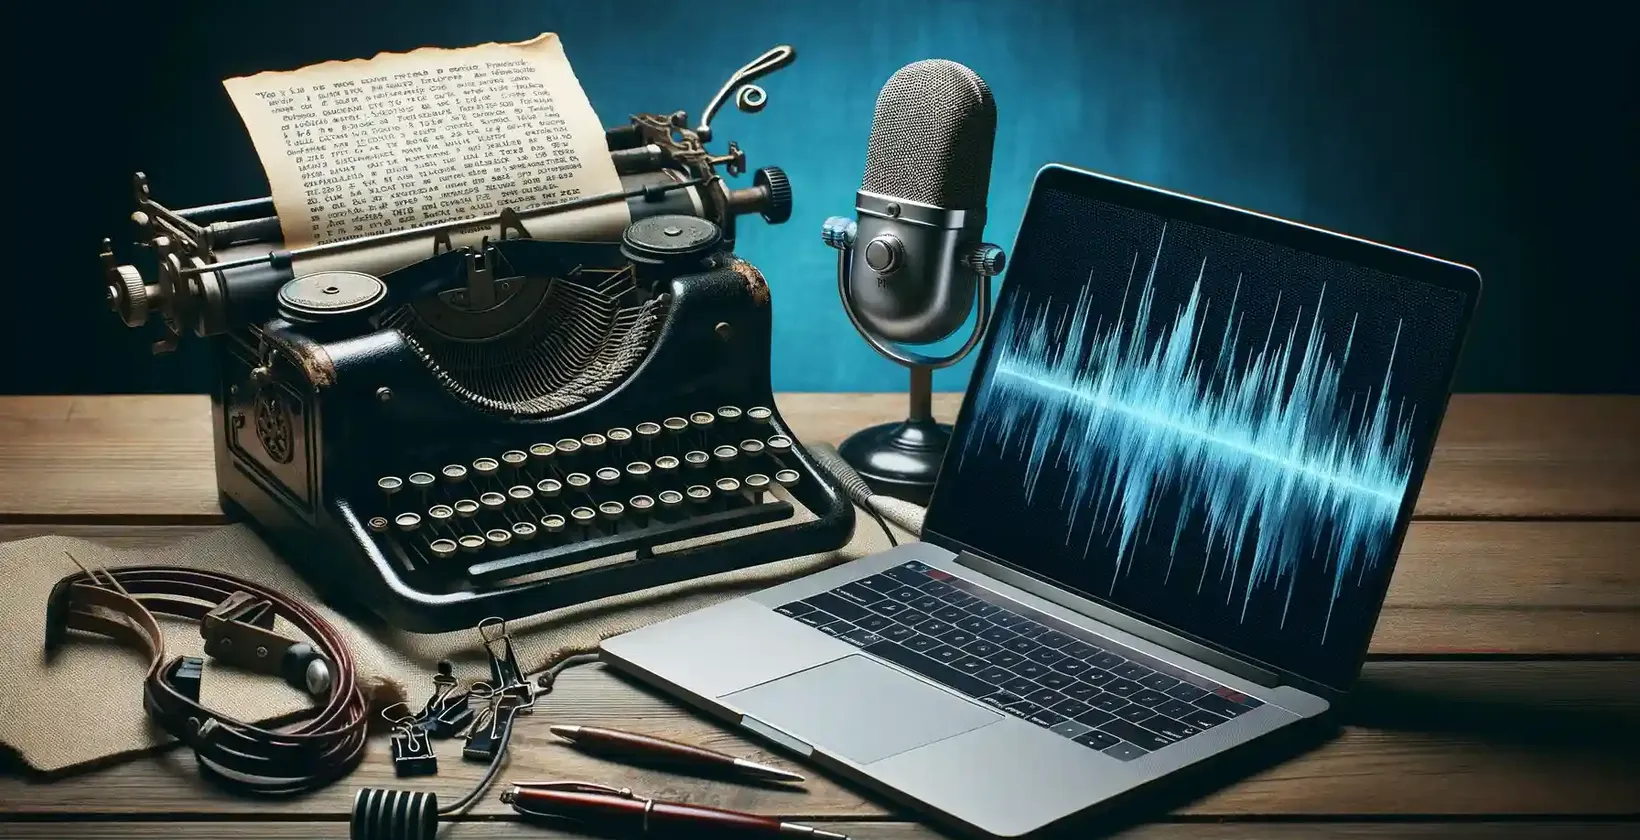 Přepisovací software pro spisovatele představovaný historickým psacím strojem, psaným textem, mikrofonem a notebookem.